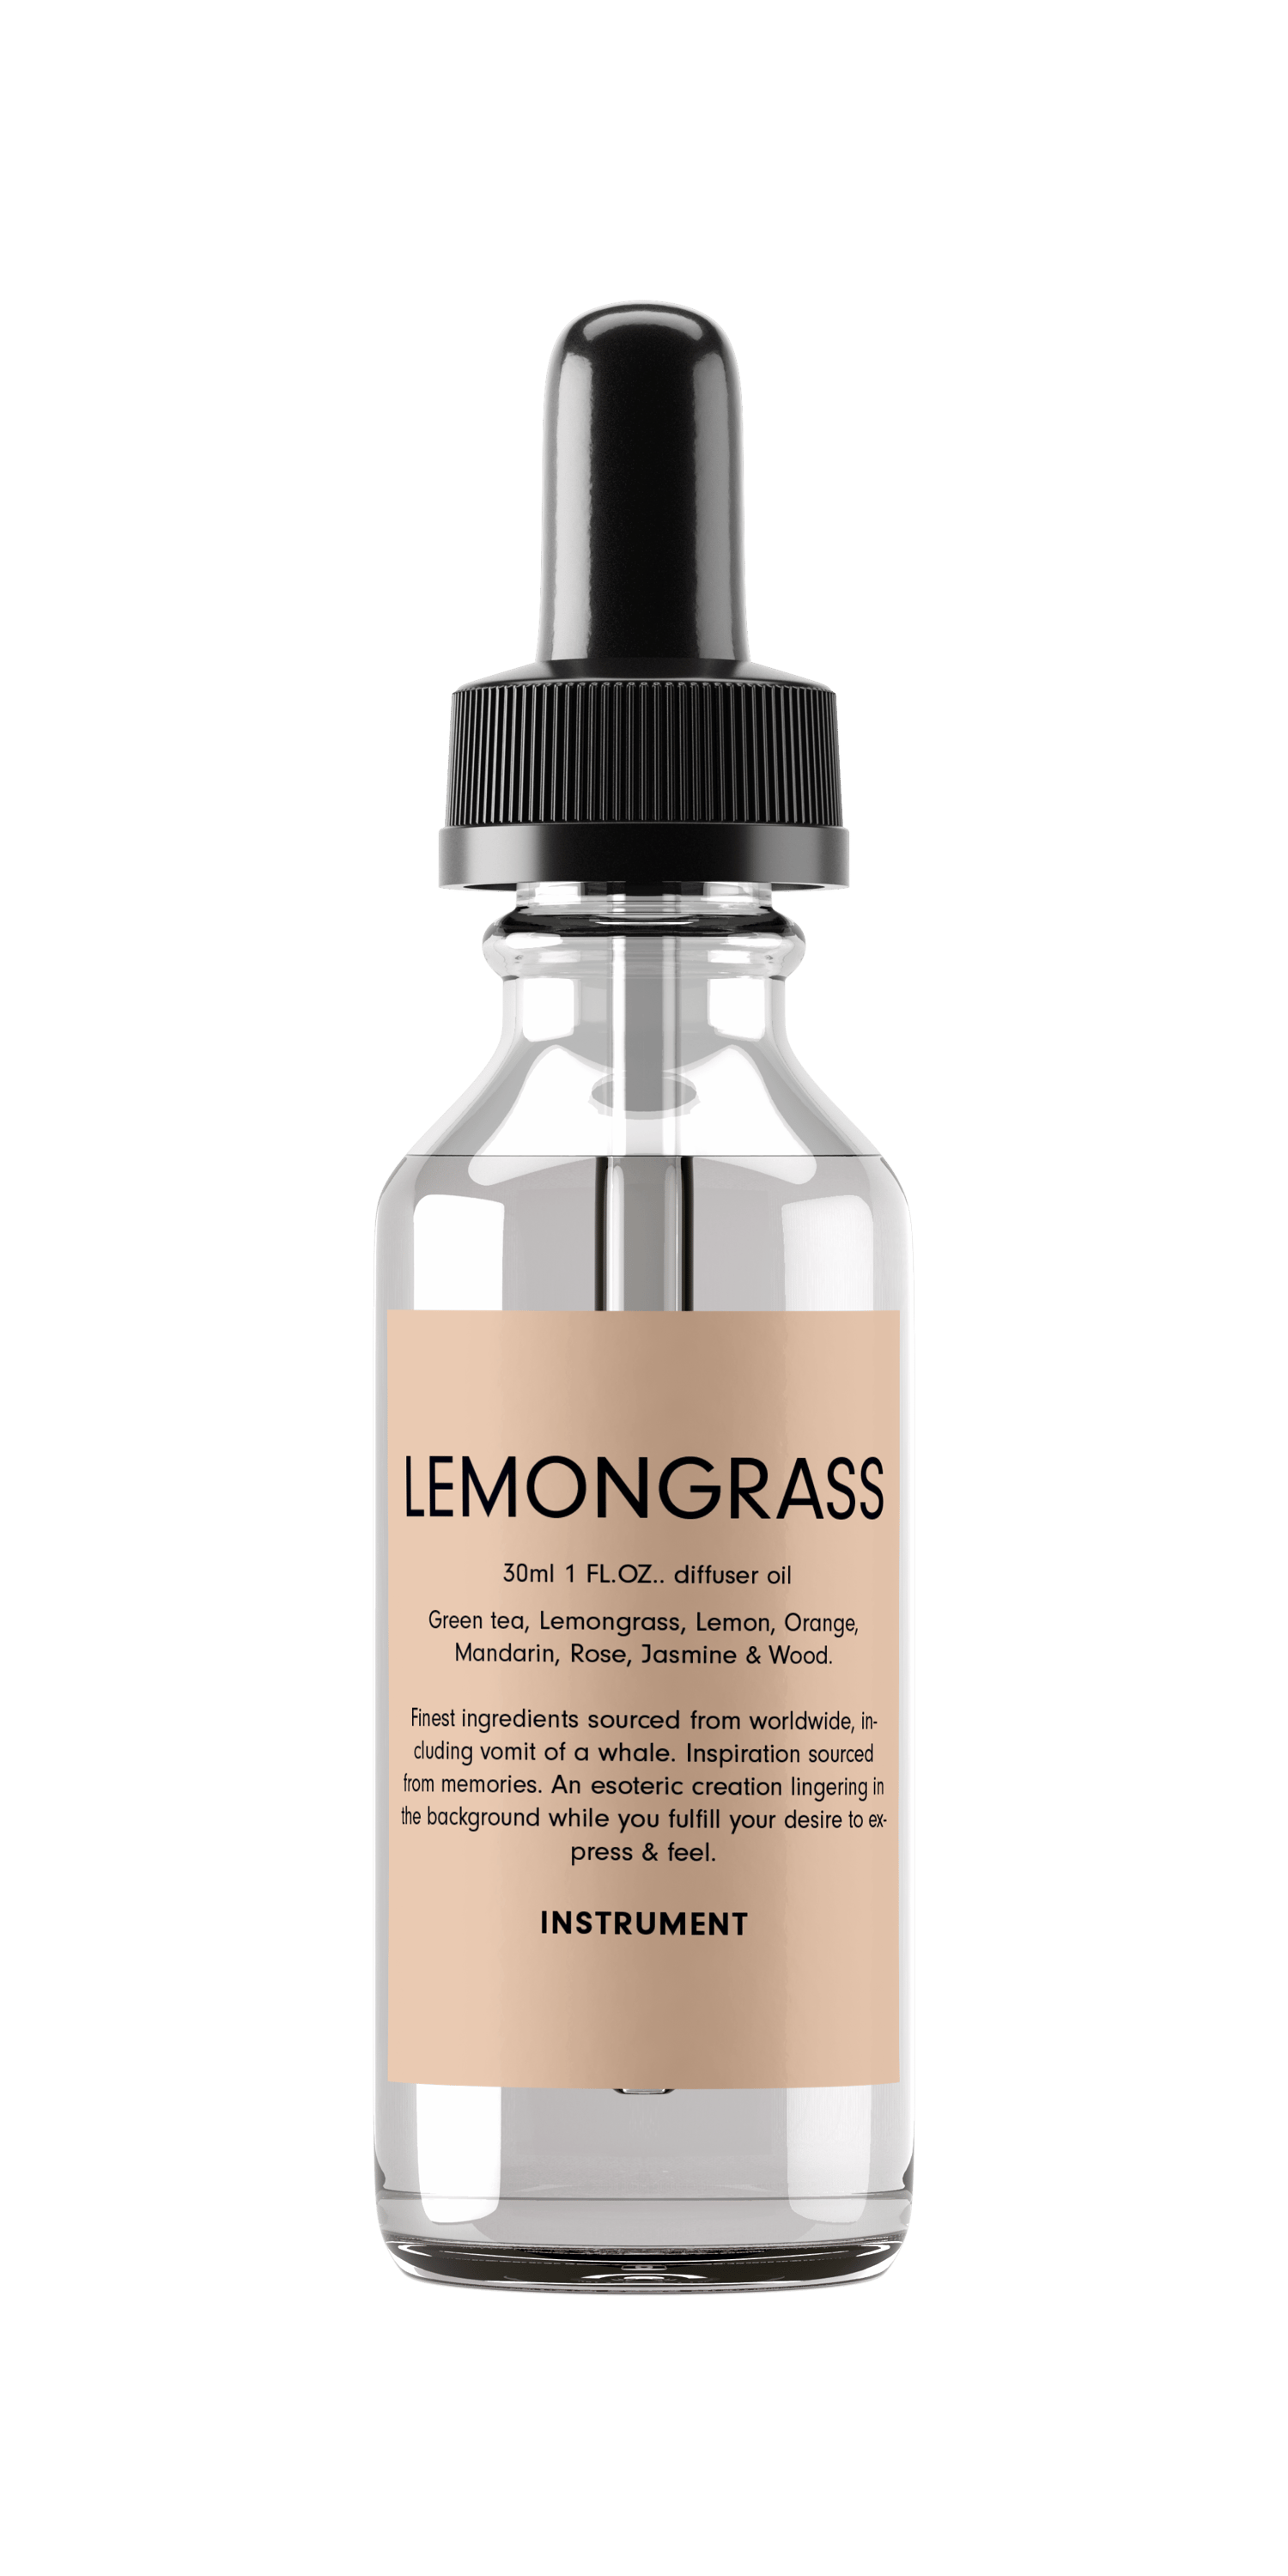 Image of Lemongrass oil